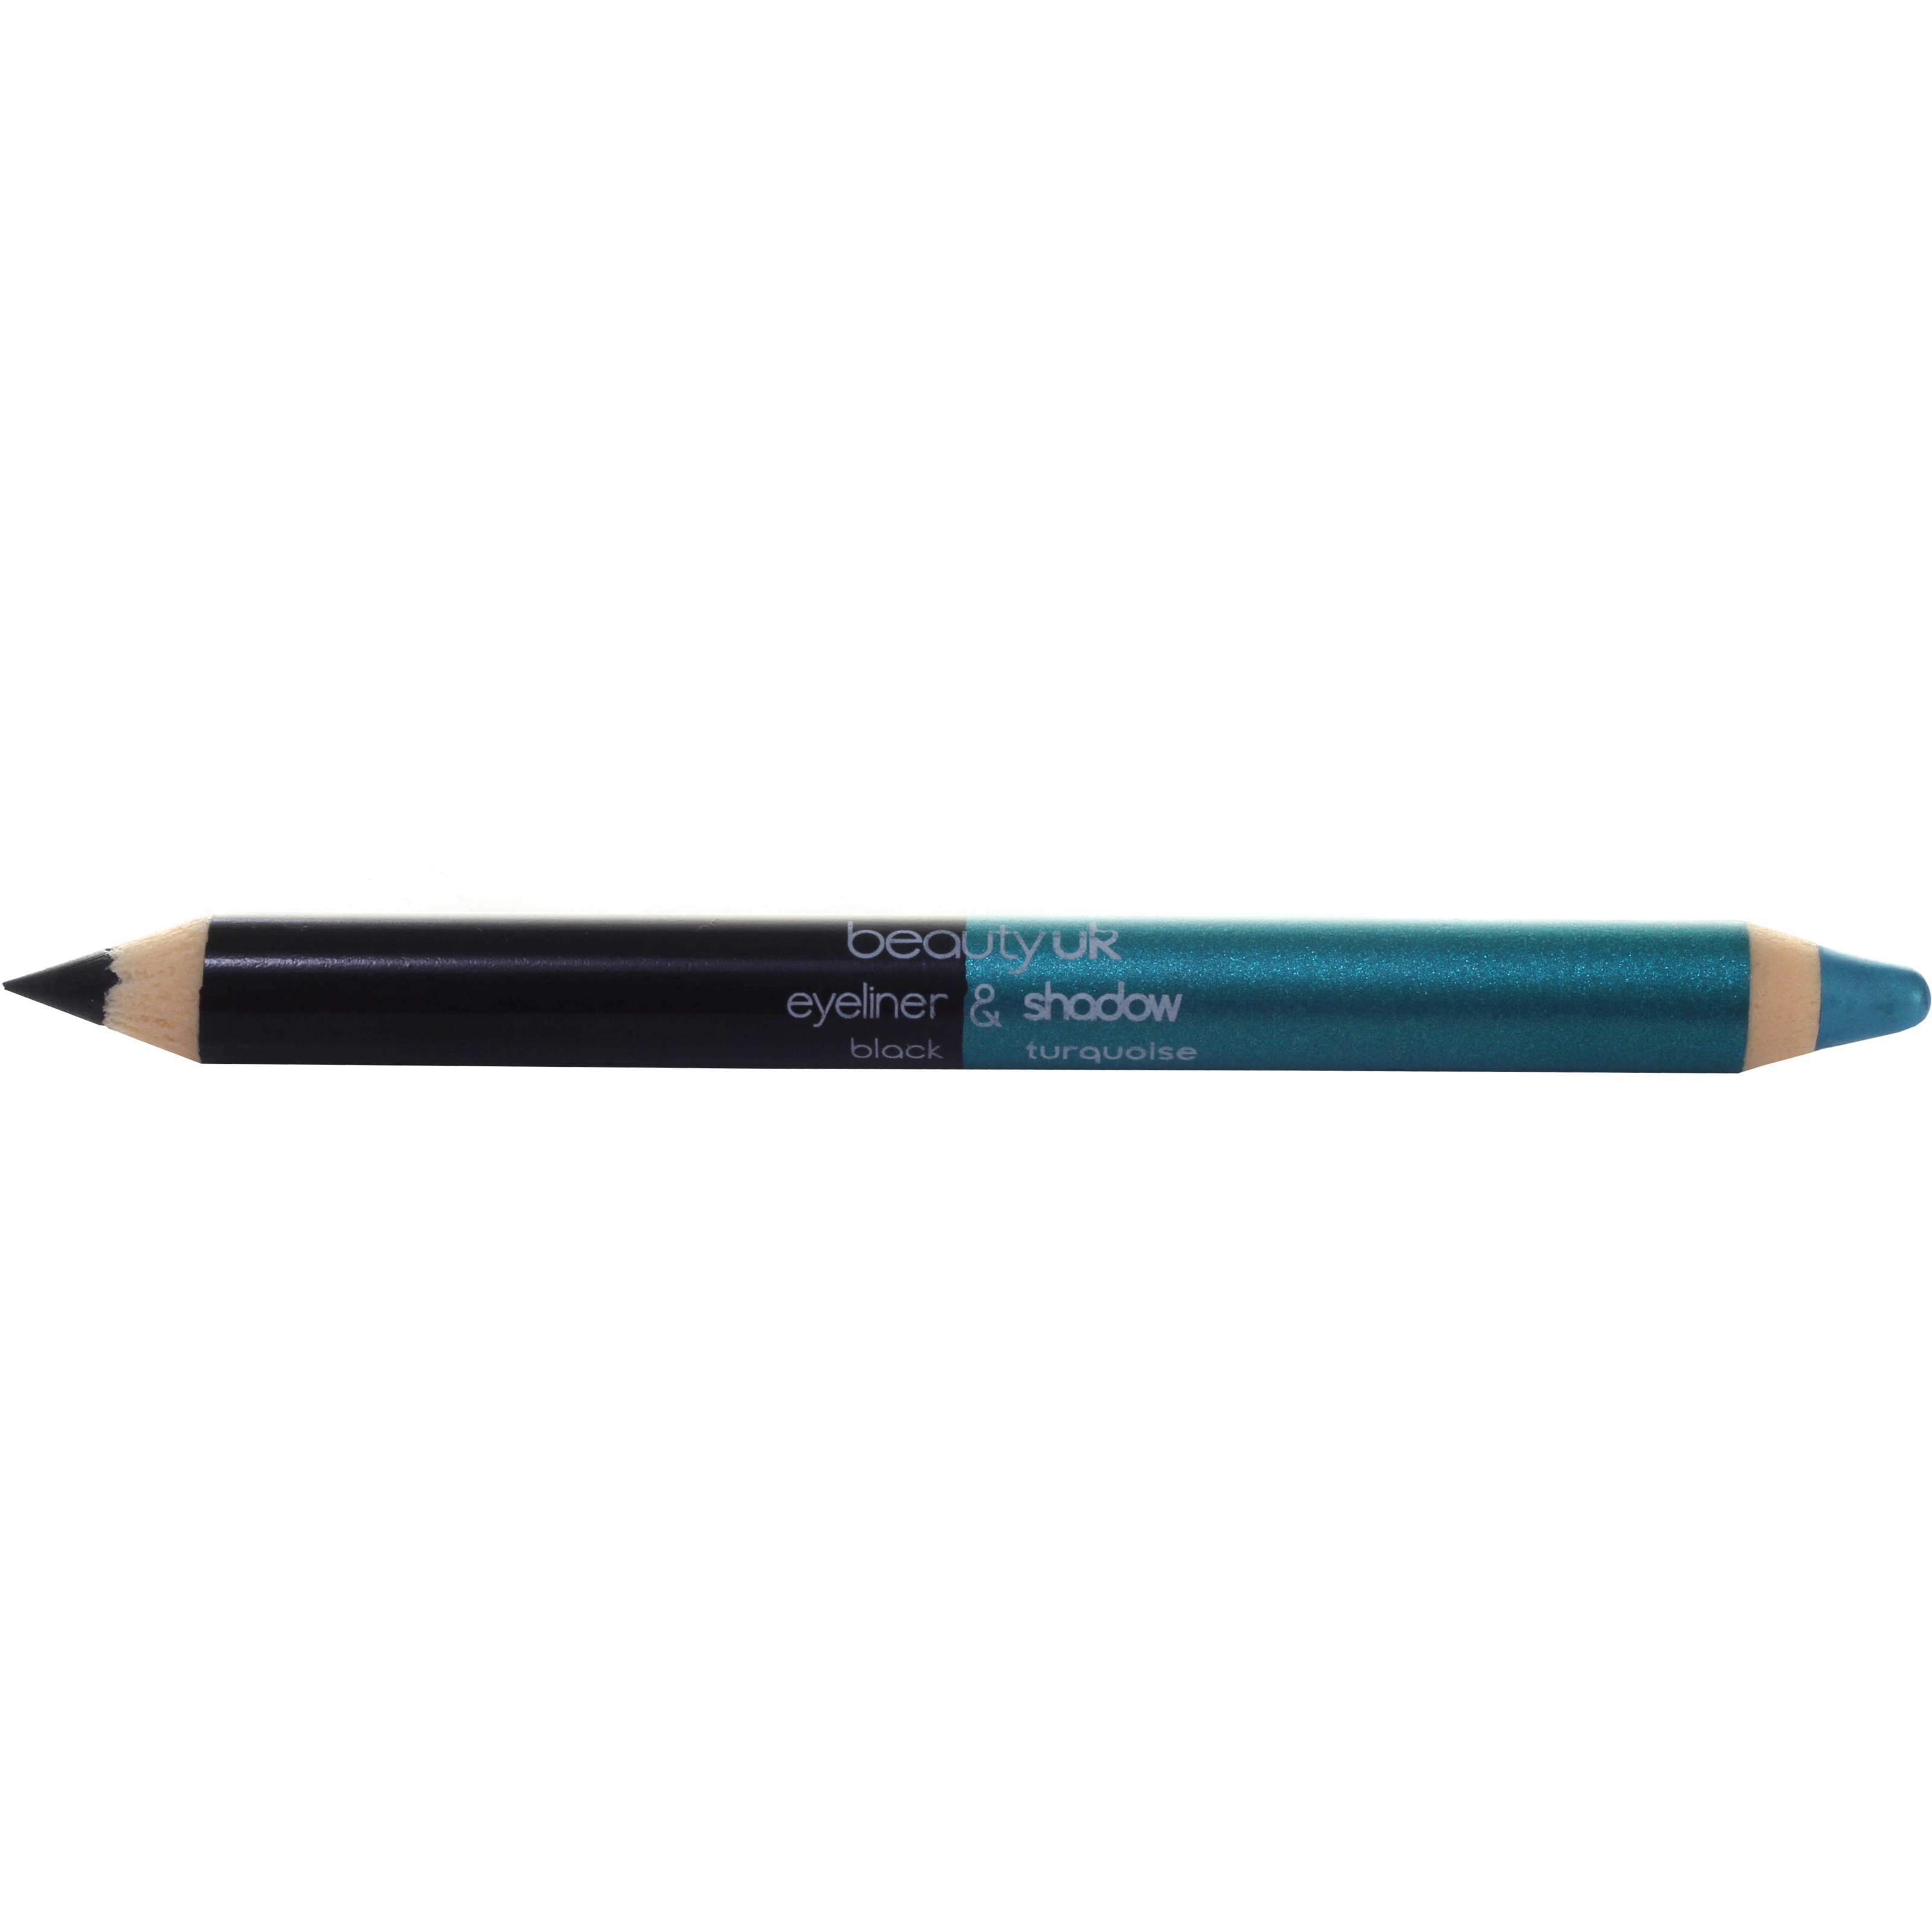 Bilde av Beauty Uk Double Ended Pencil (jumbo) Black/ Turquoise